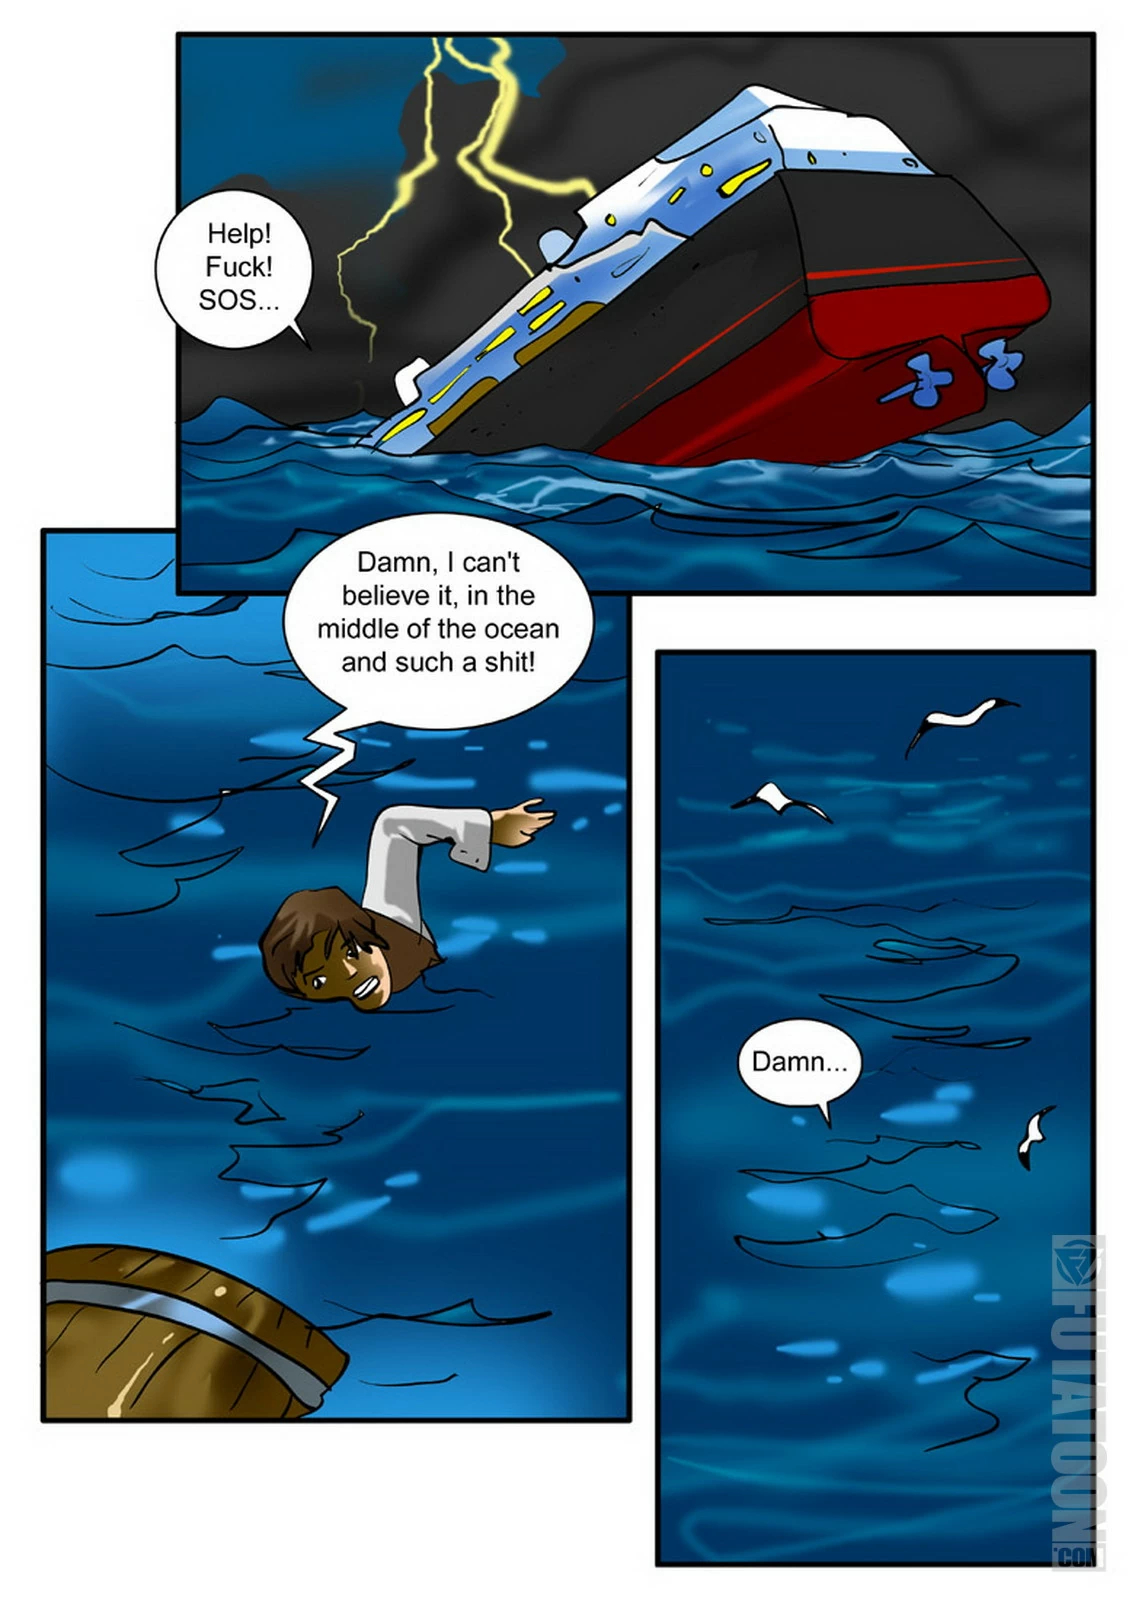 futanari orgy comics shipwreck